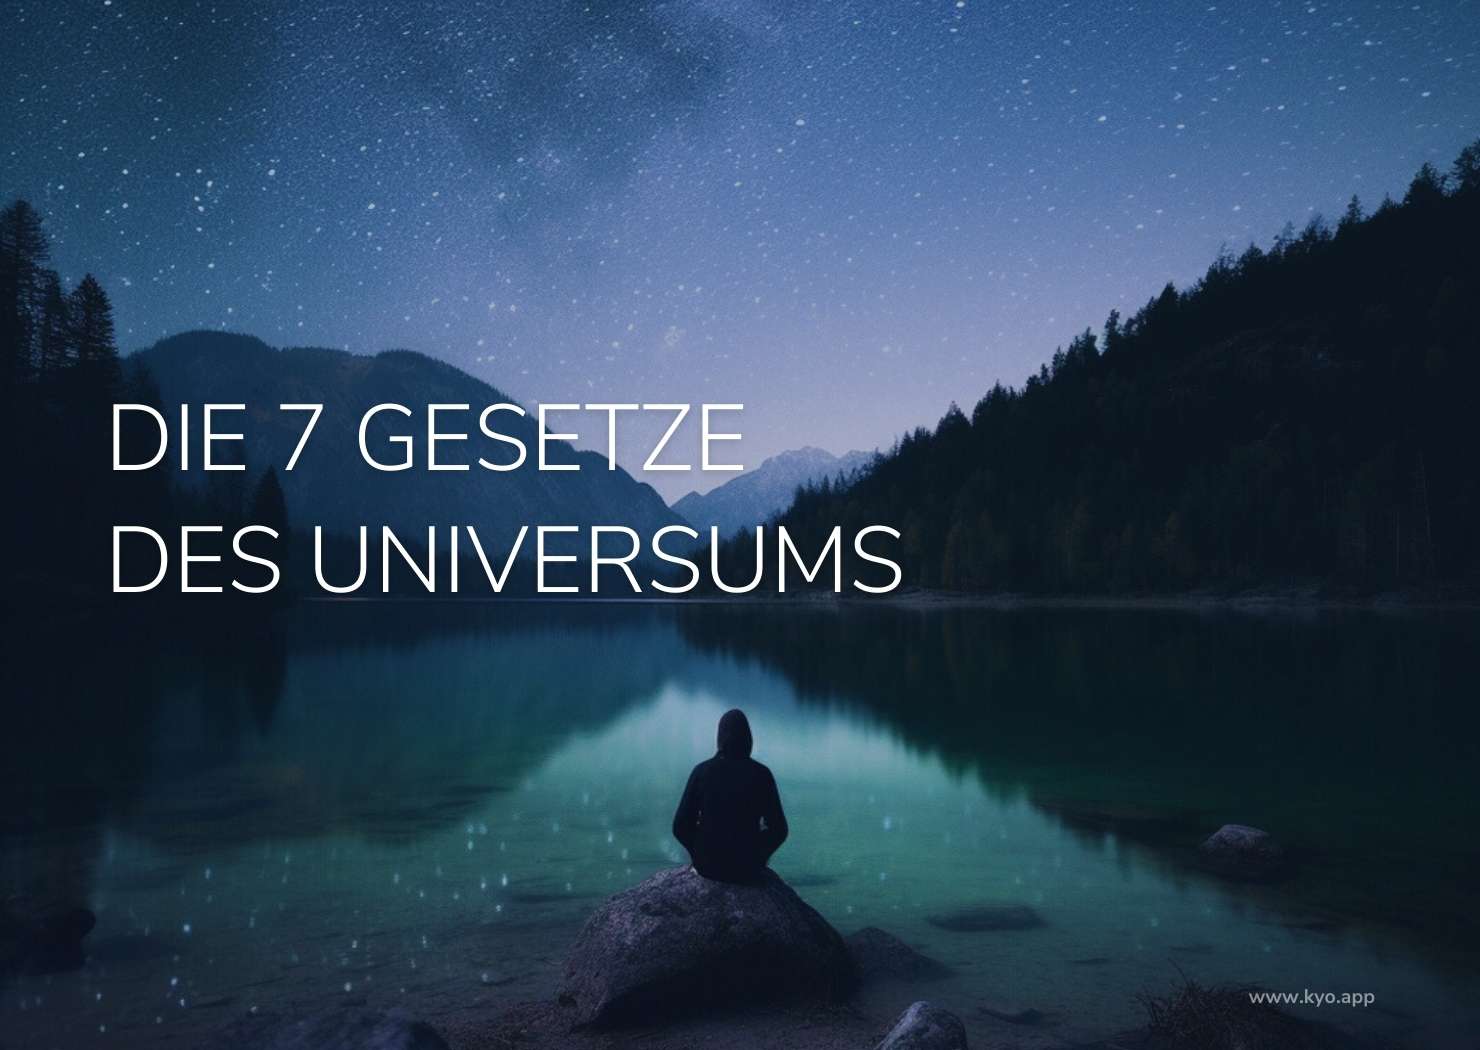 Die sieben Gesetze des Universums